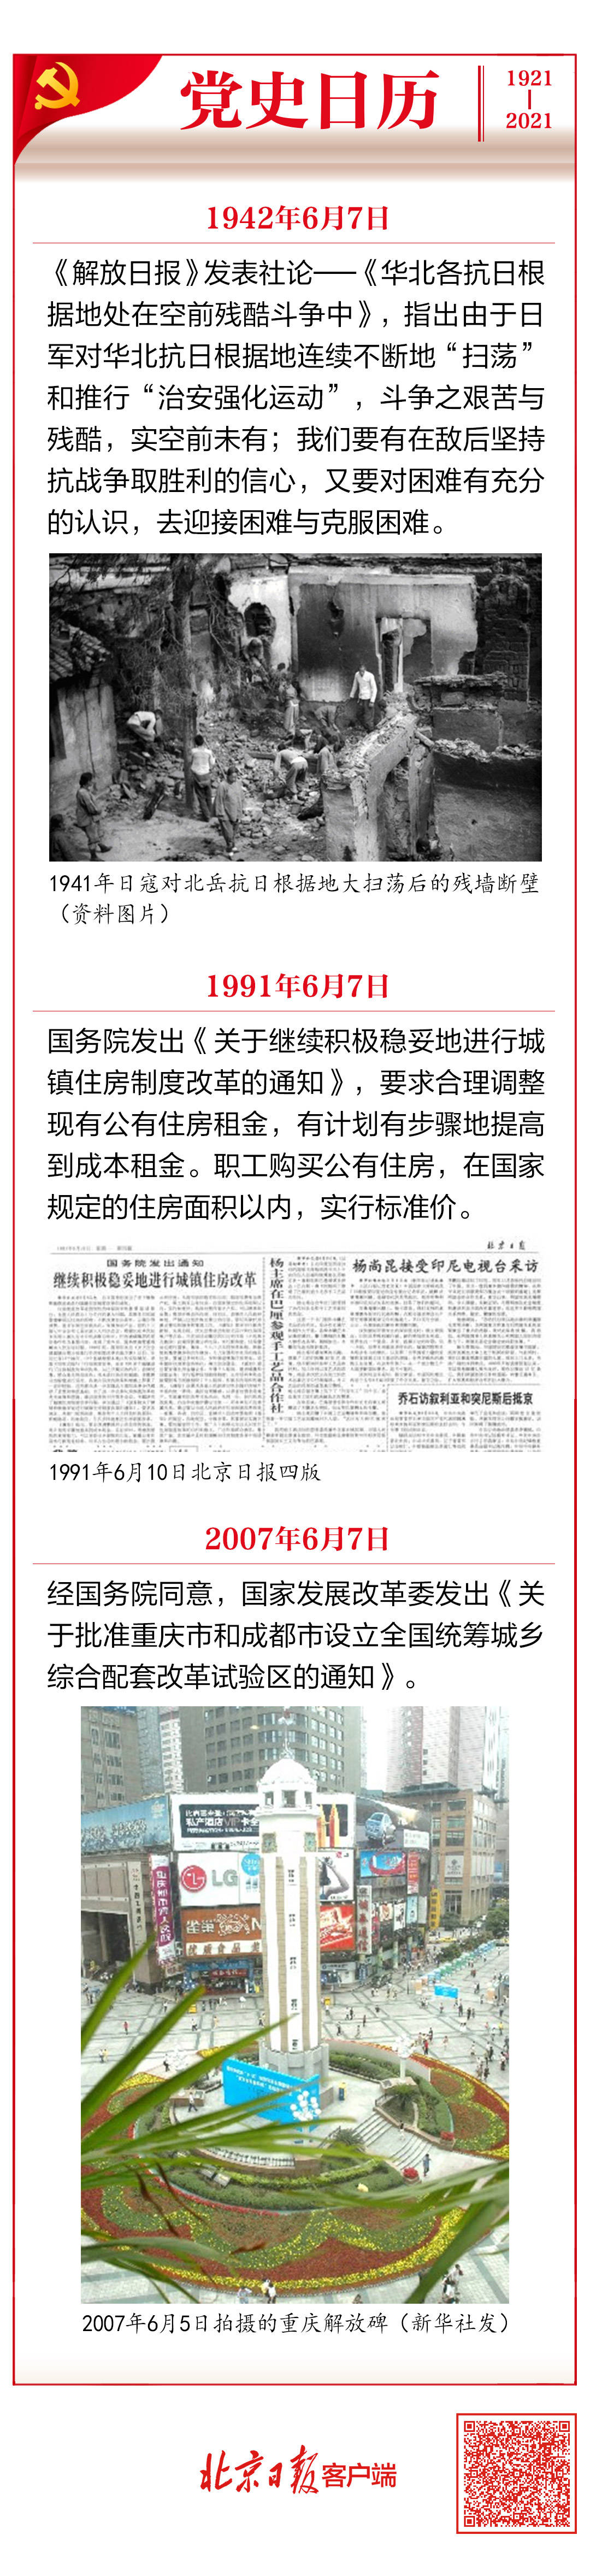 党史日历 6月7日 发表社论 华北各抗日根据地处在空前残酷斗争中